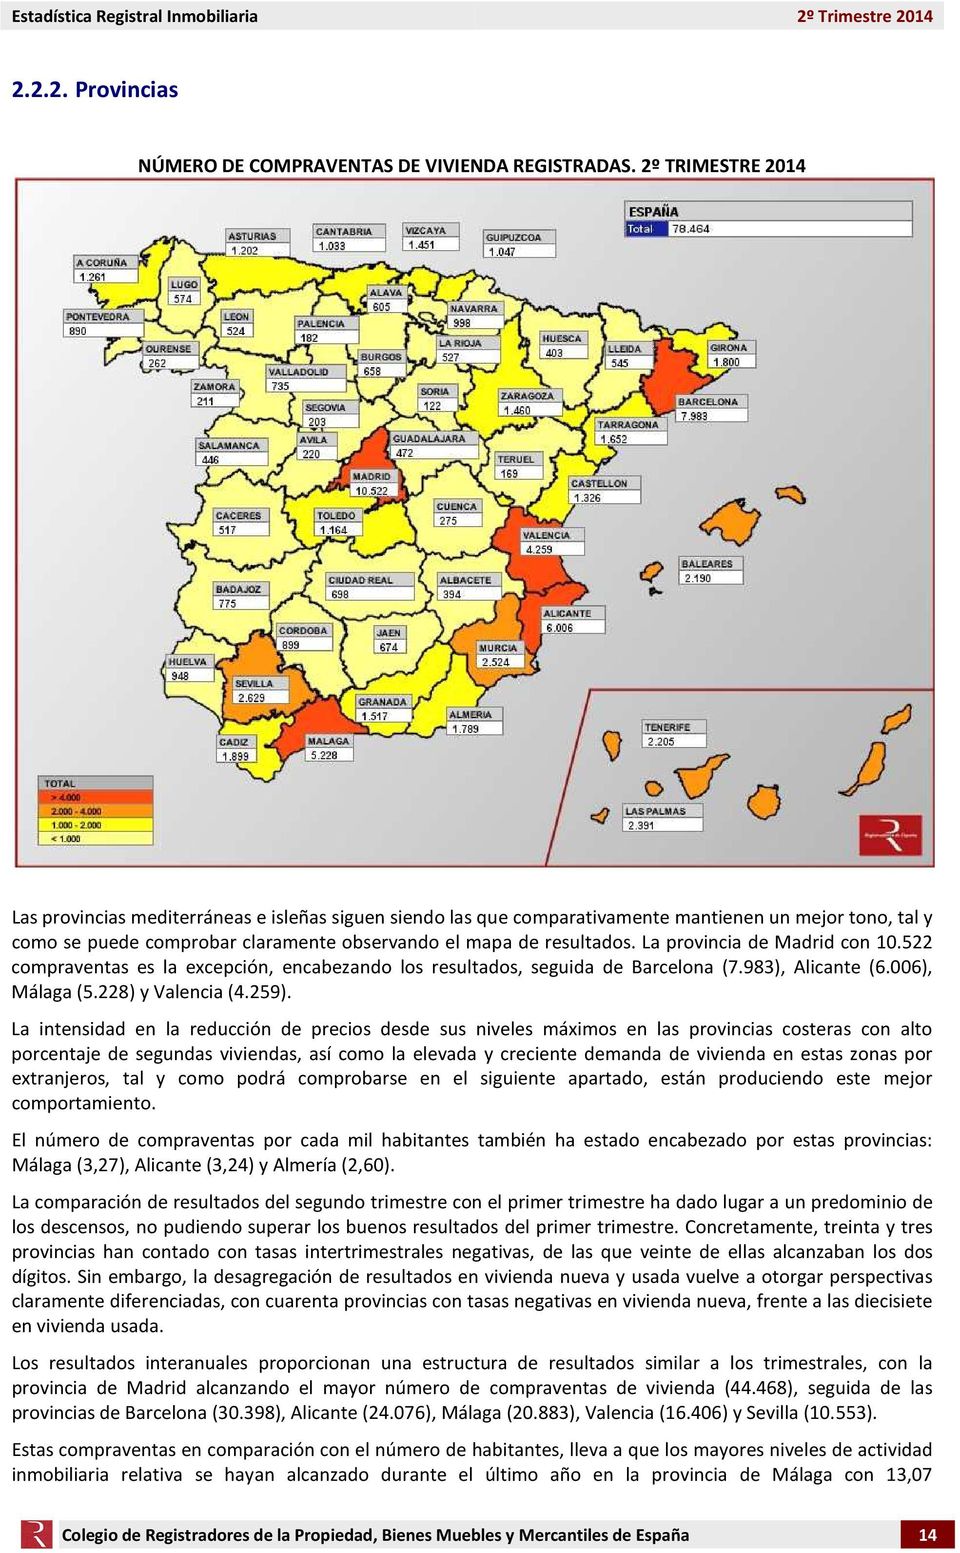 La provincia de Madrid con 10.522 compraventas es la excepción, encabezando los resultados, seguida de Barcelona (7.983), Alicante (6.006), Málaga (5.228) y Valencia (4.259).